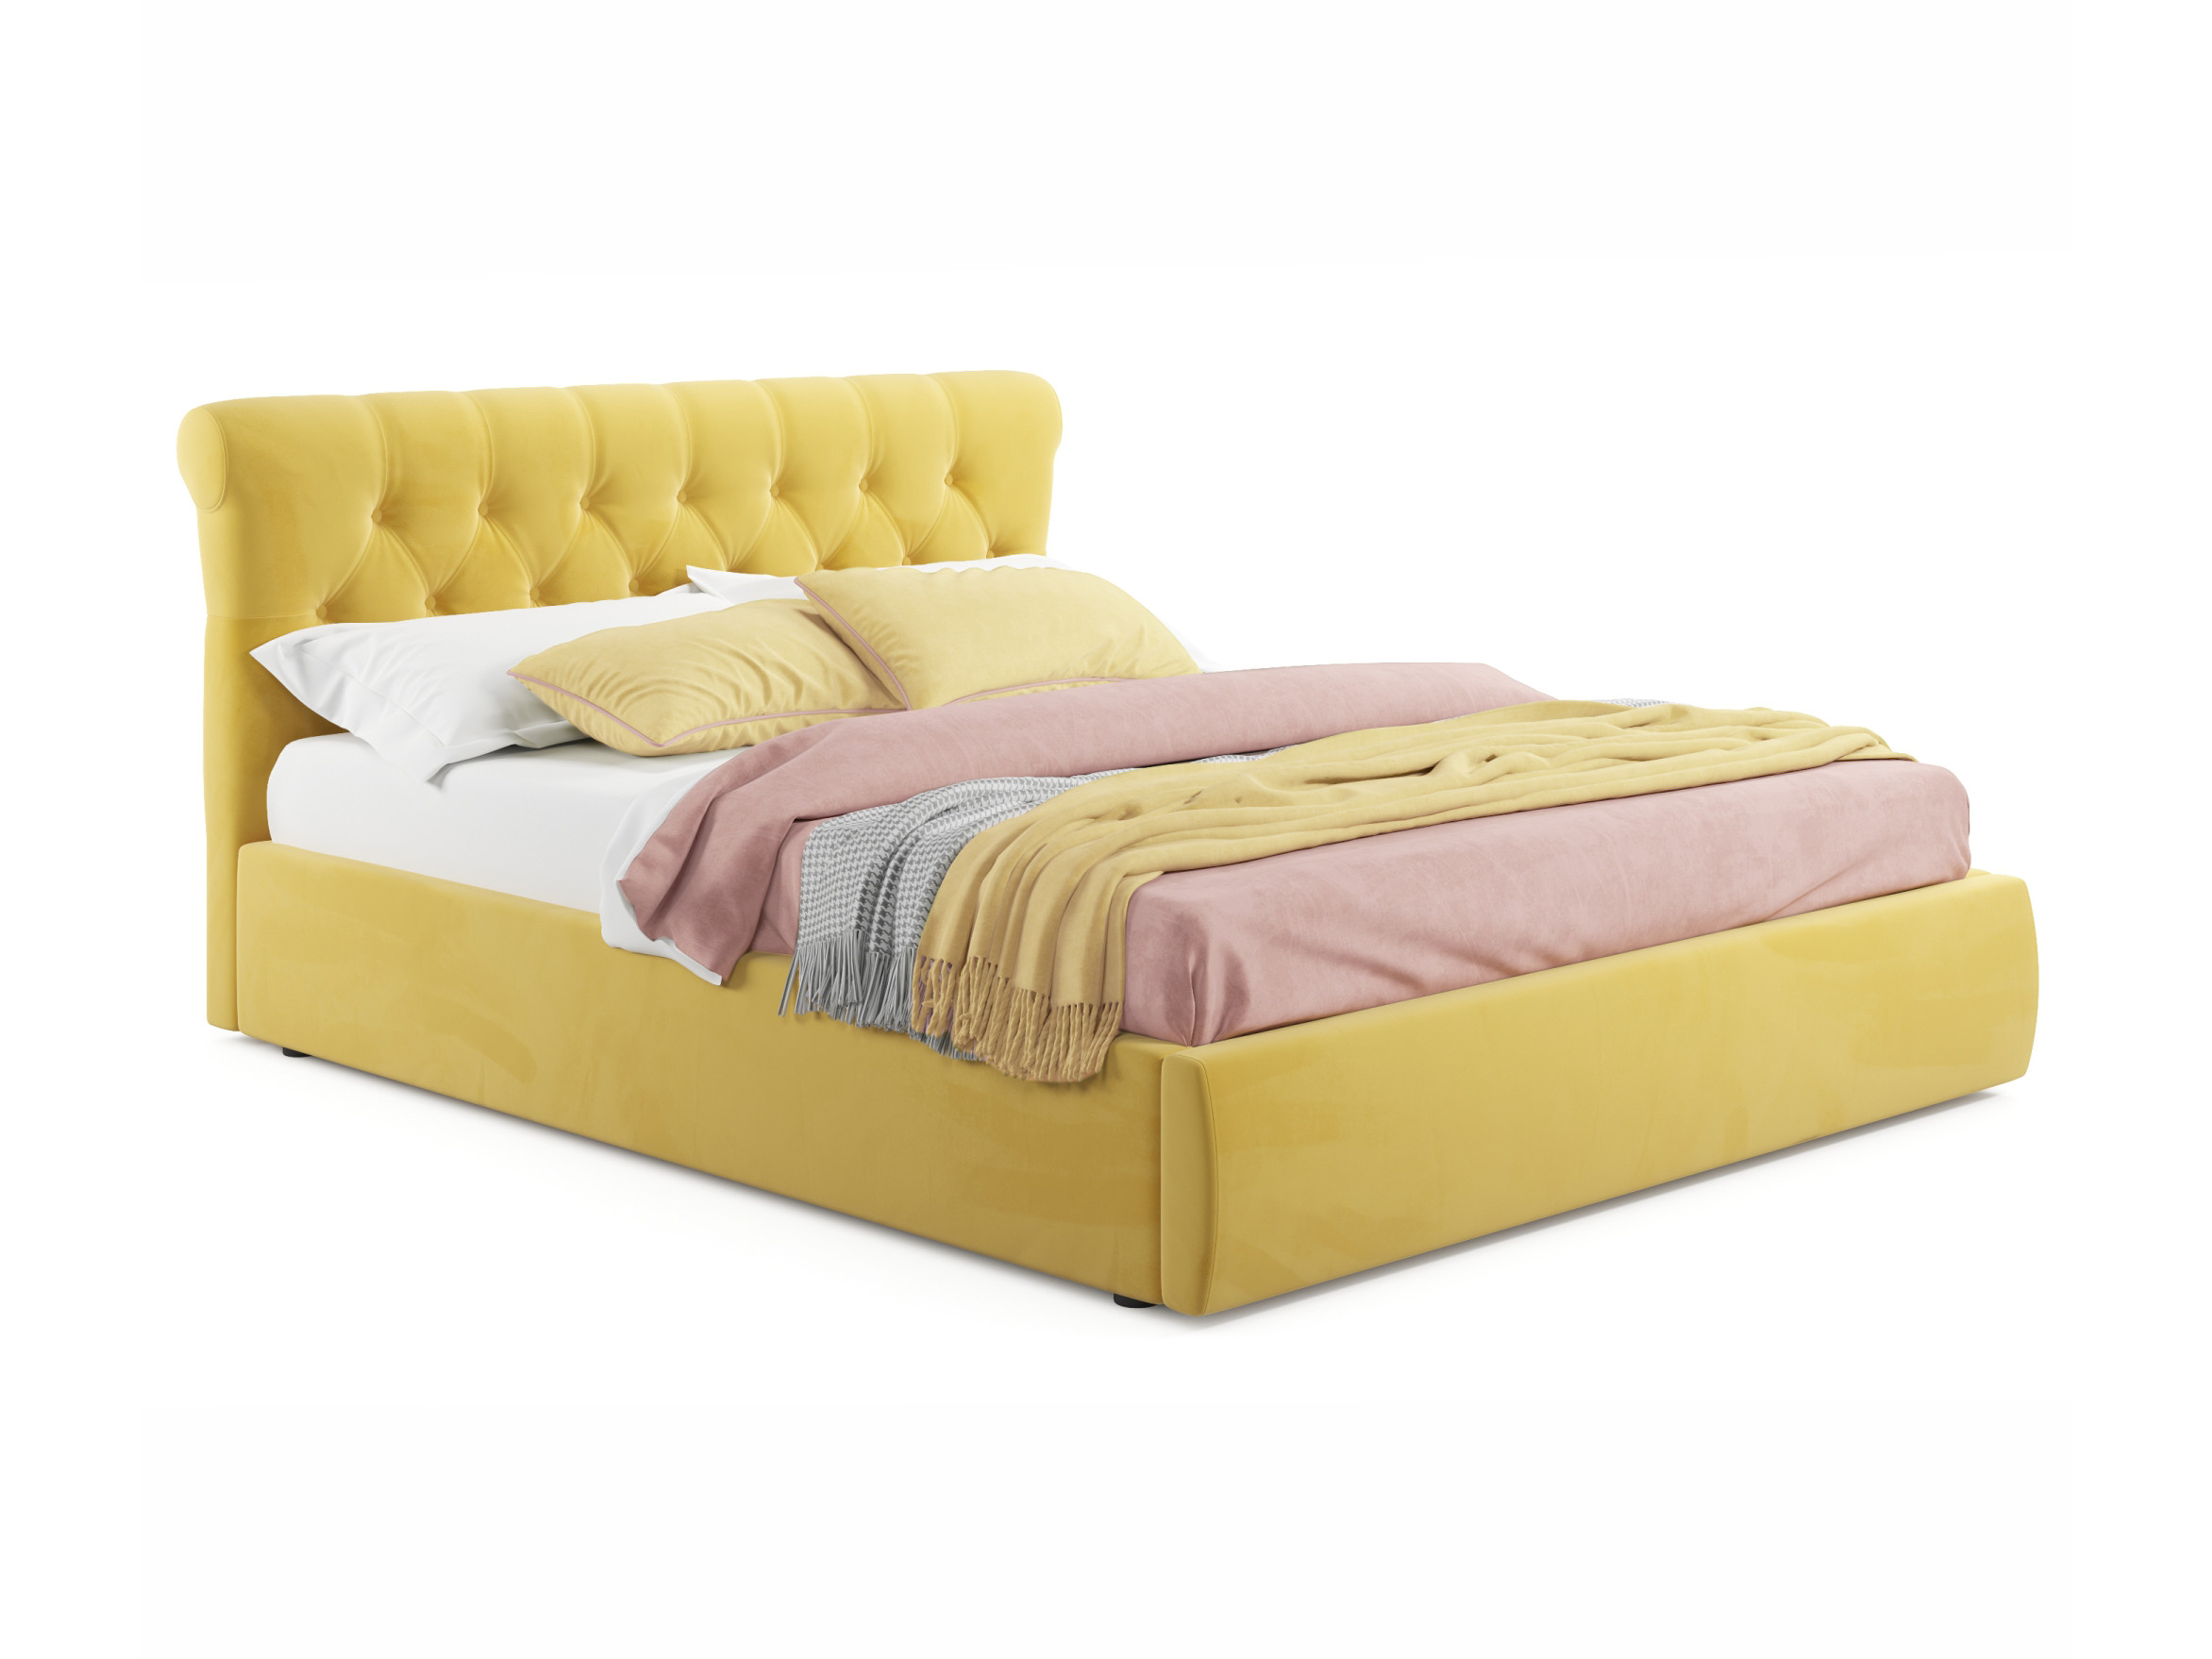 Мягкая кровать Ameli 1800 желтая с подъемным механизмом желтый, Желтый, Велюр, ДСП мягкая кровать с тумбами ameli 1600 желтая с подъемным механизмом желтый желтый велюр дсп